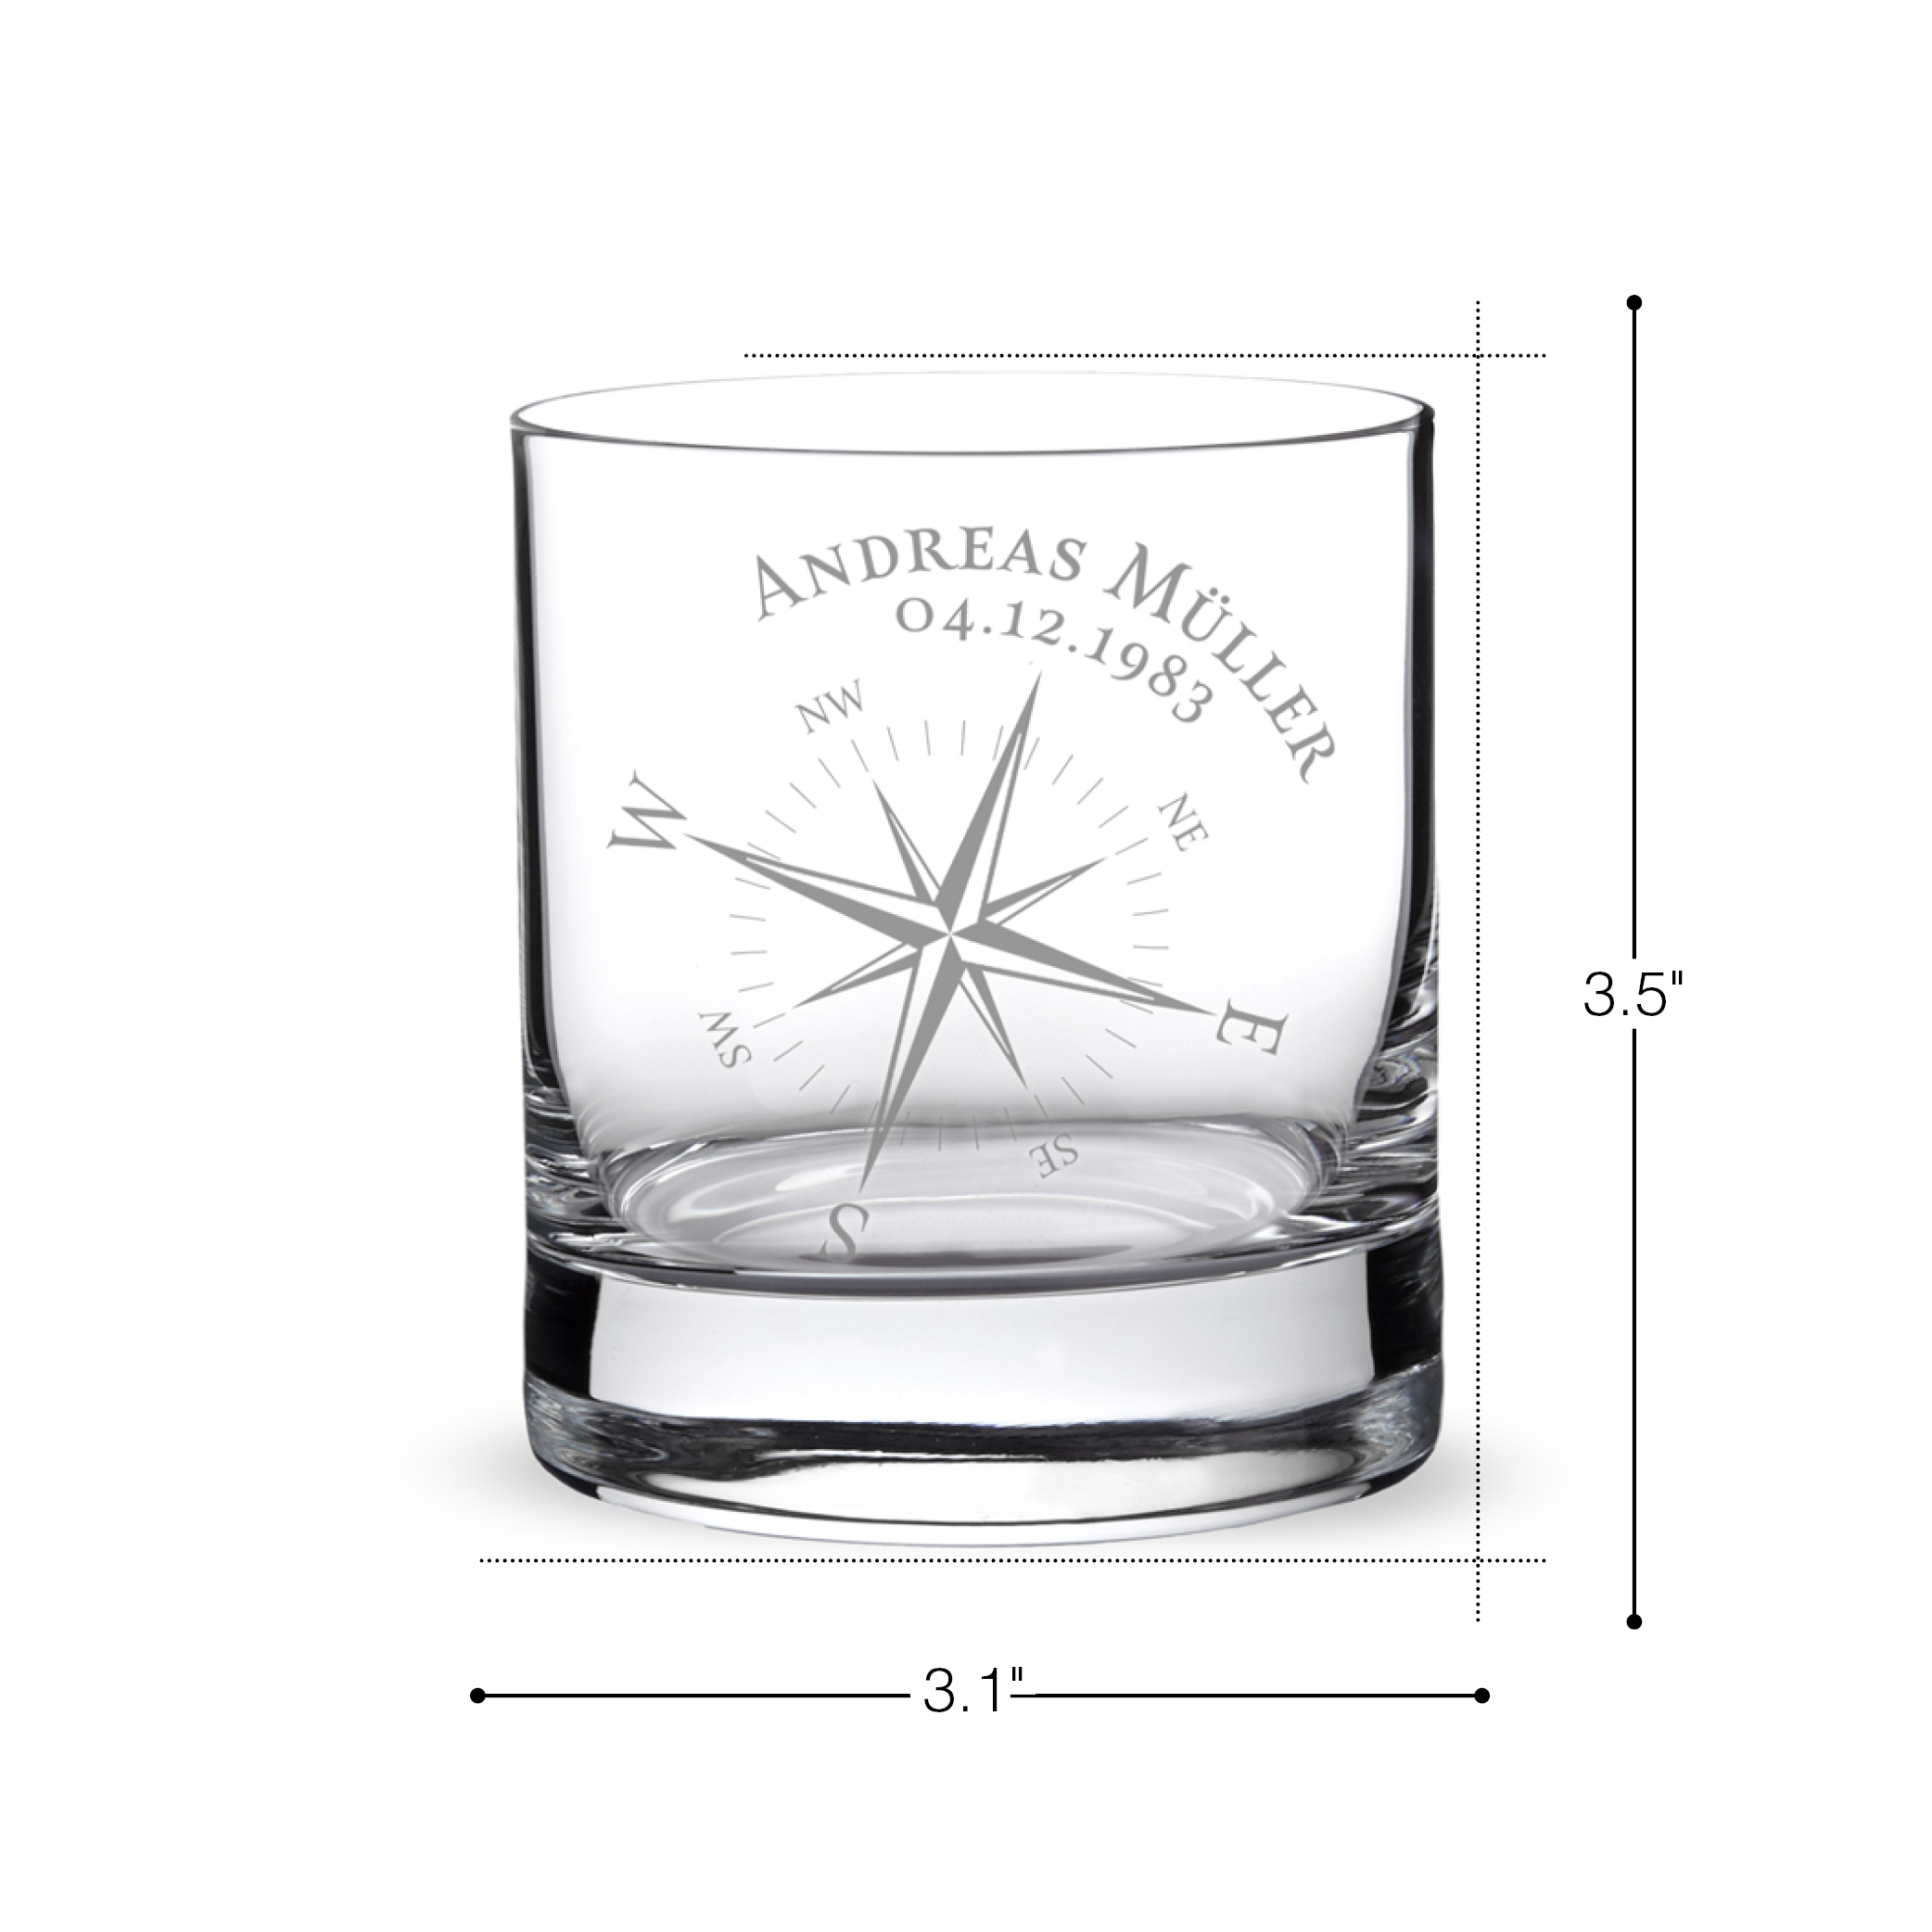 Whiskyglas mit Gravur - Kompass - Personalisiert